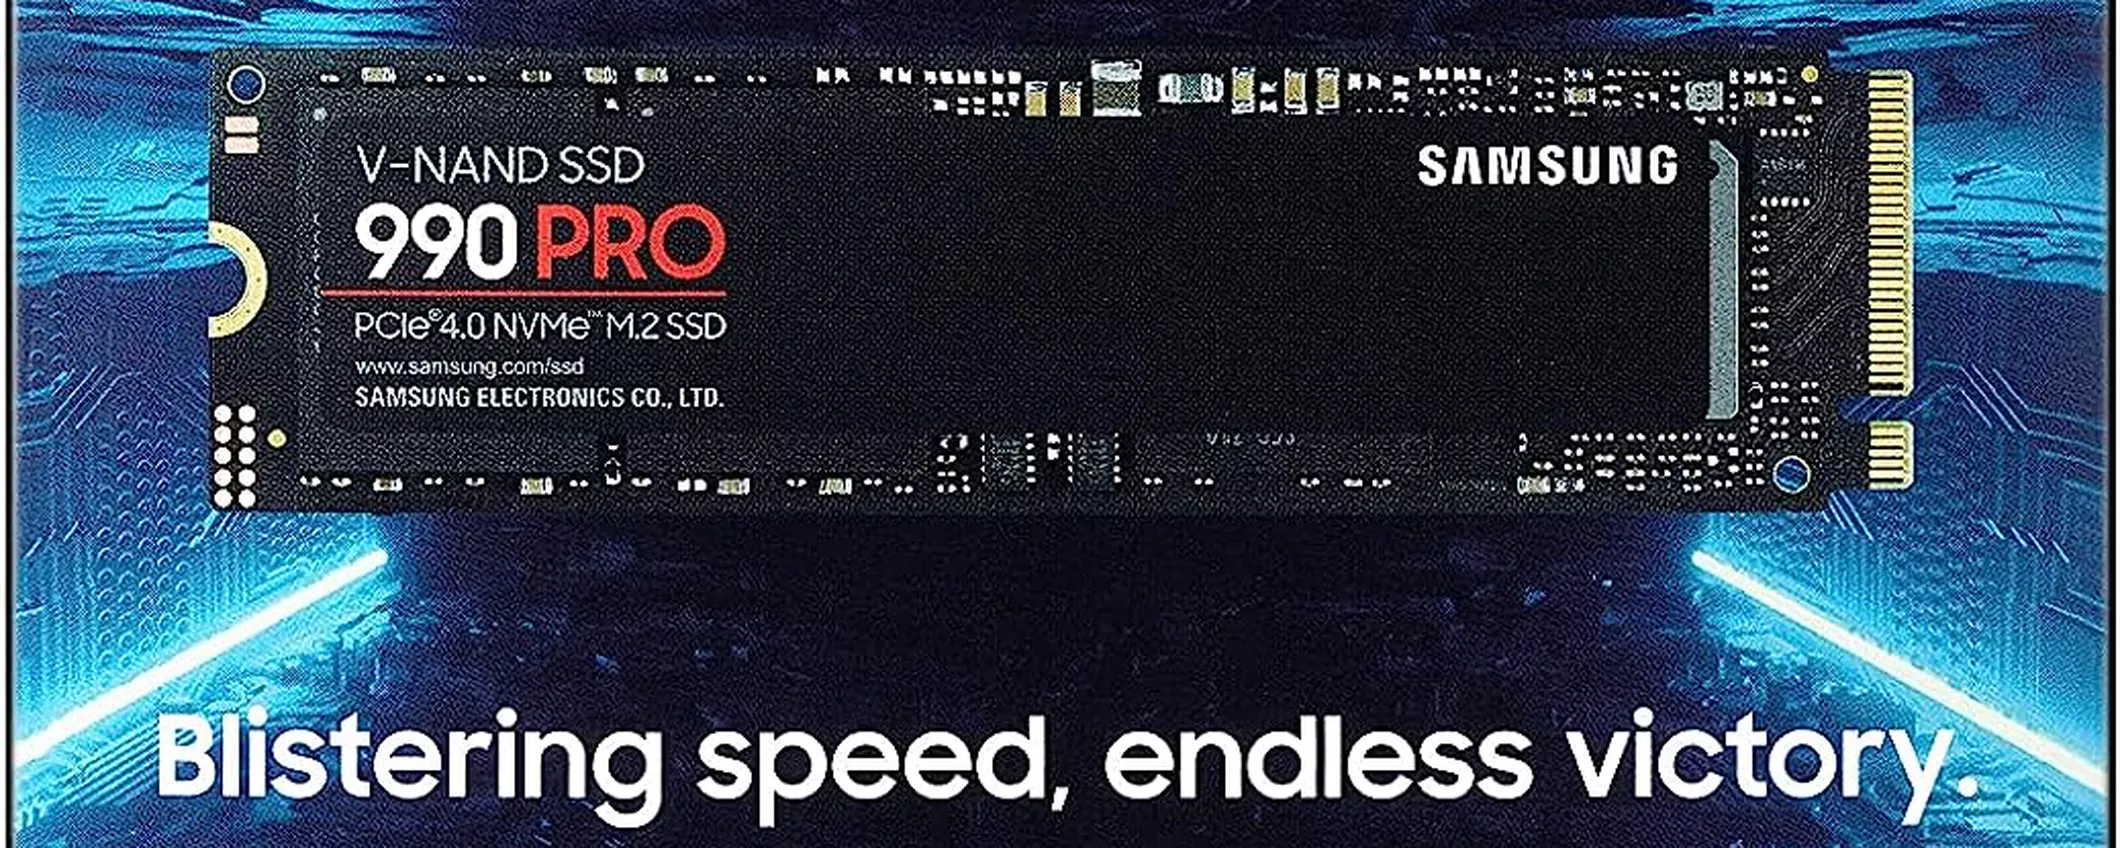 SAMSUNG 990 PRO M.2 in SUPER OFFERTA su Amazon: fai VOLARE la tua PlayStation 5